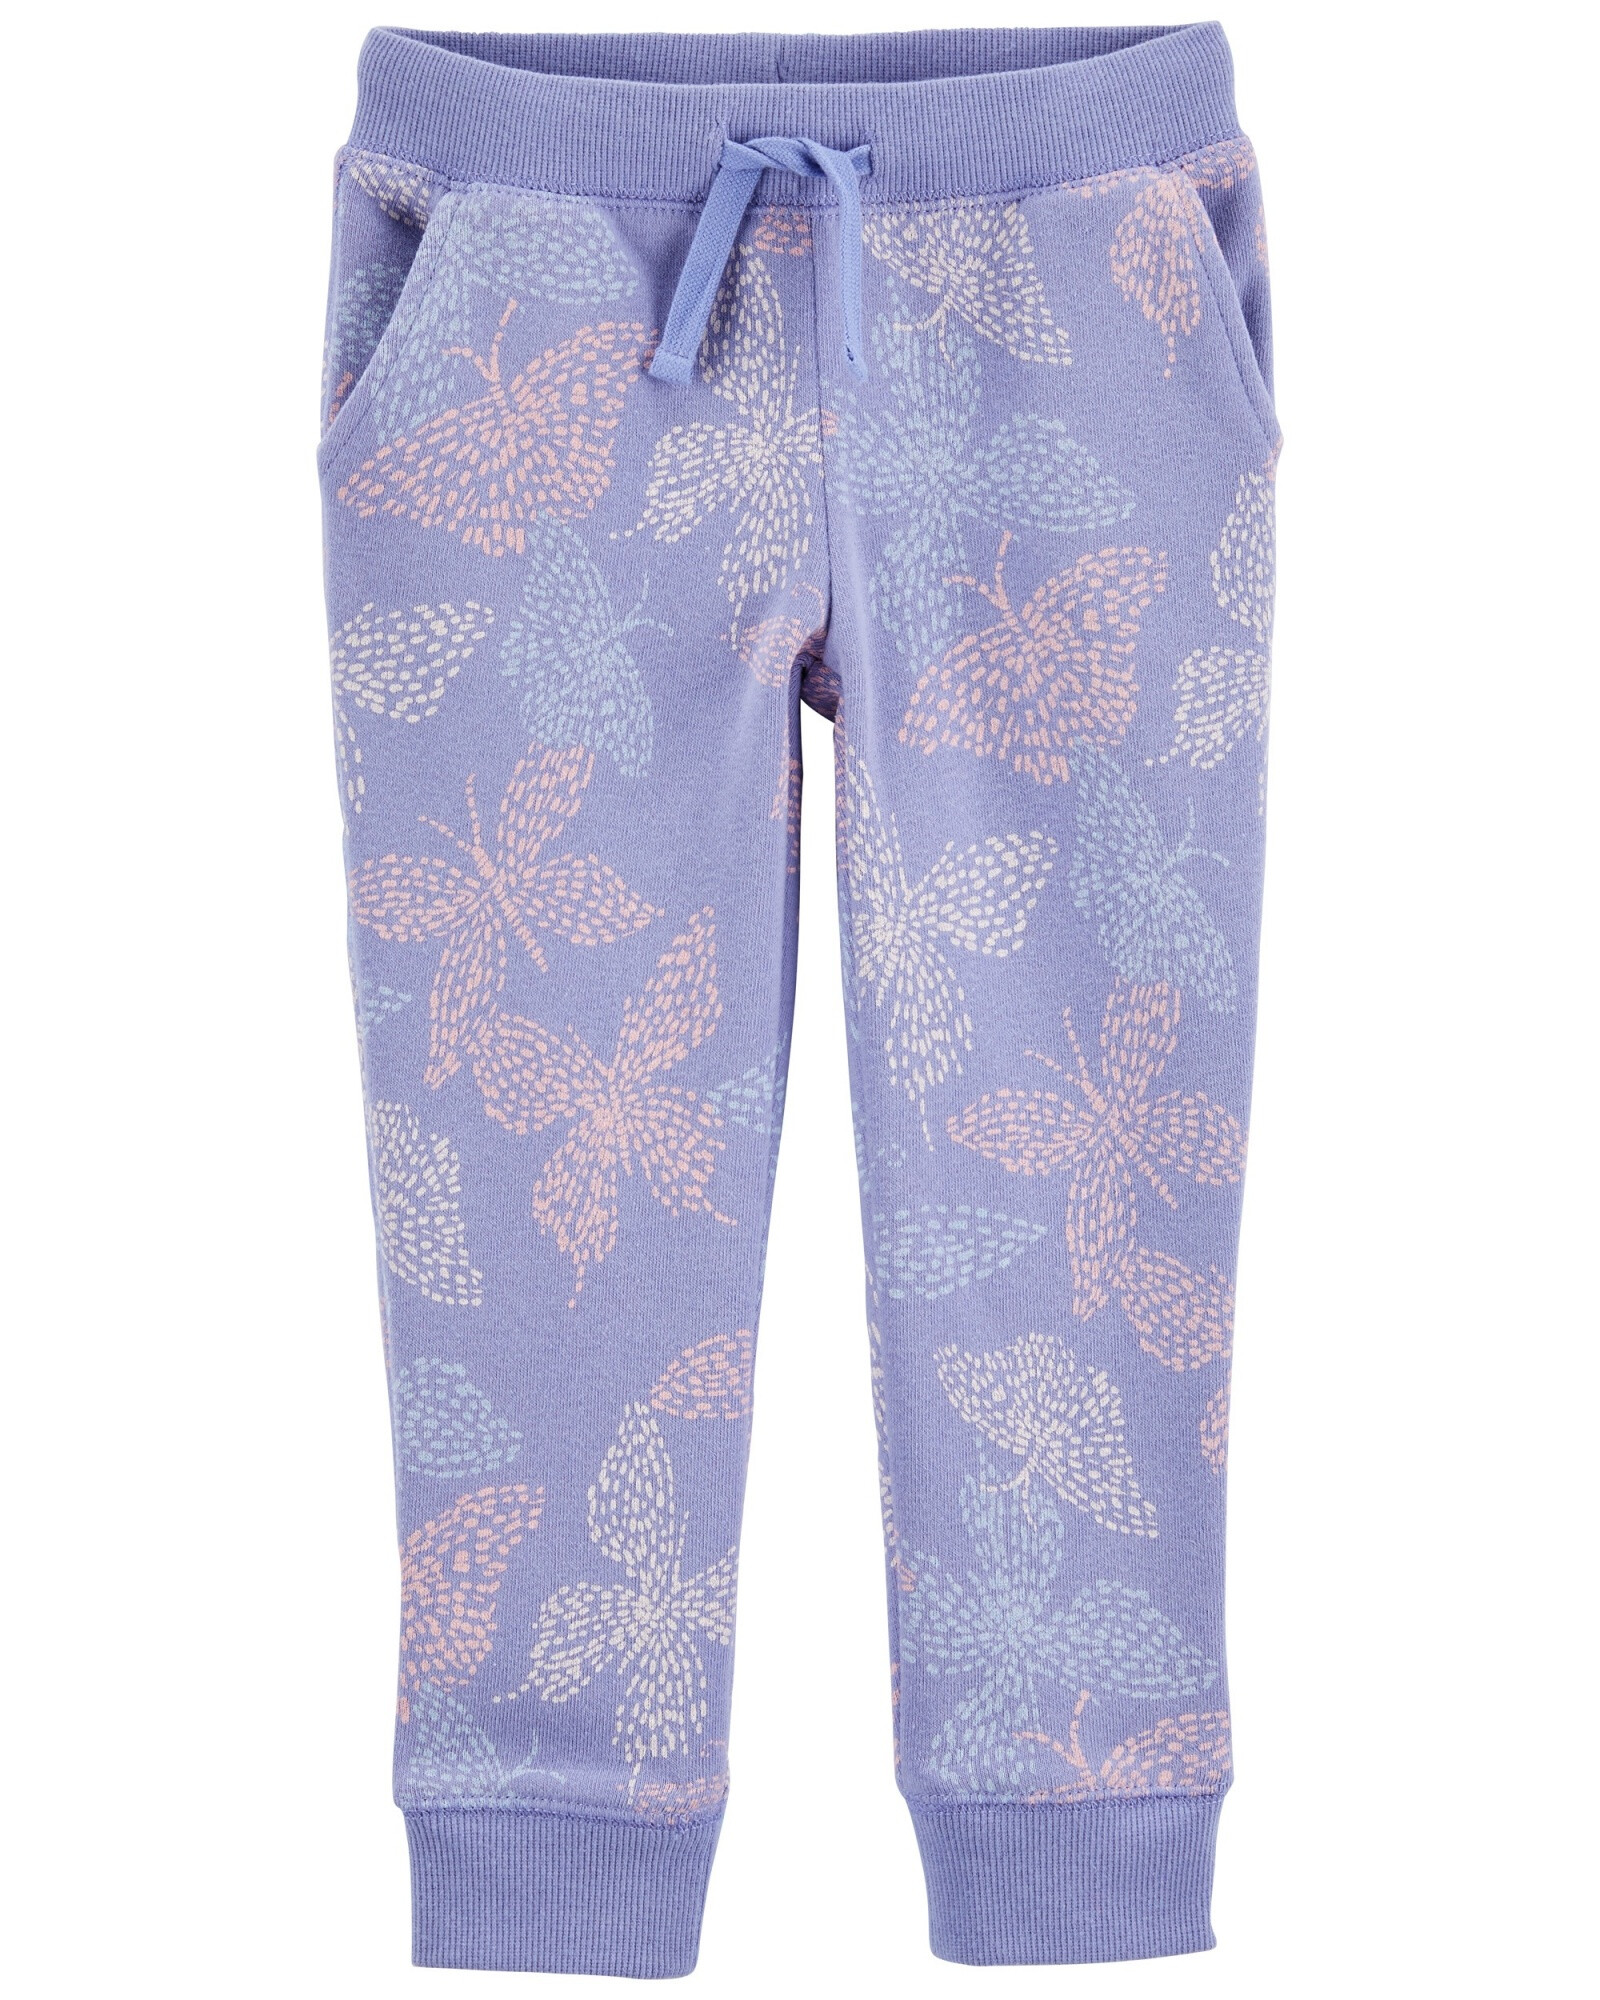 Pantalón deportivo de algodón, diseño mariposas Sin color